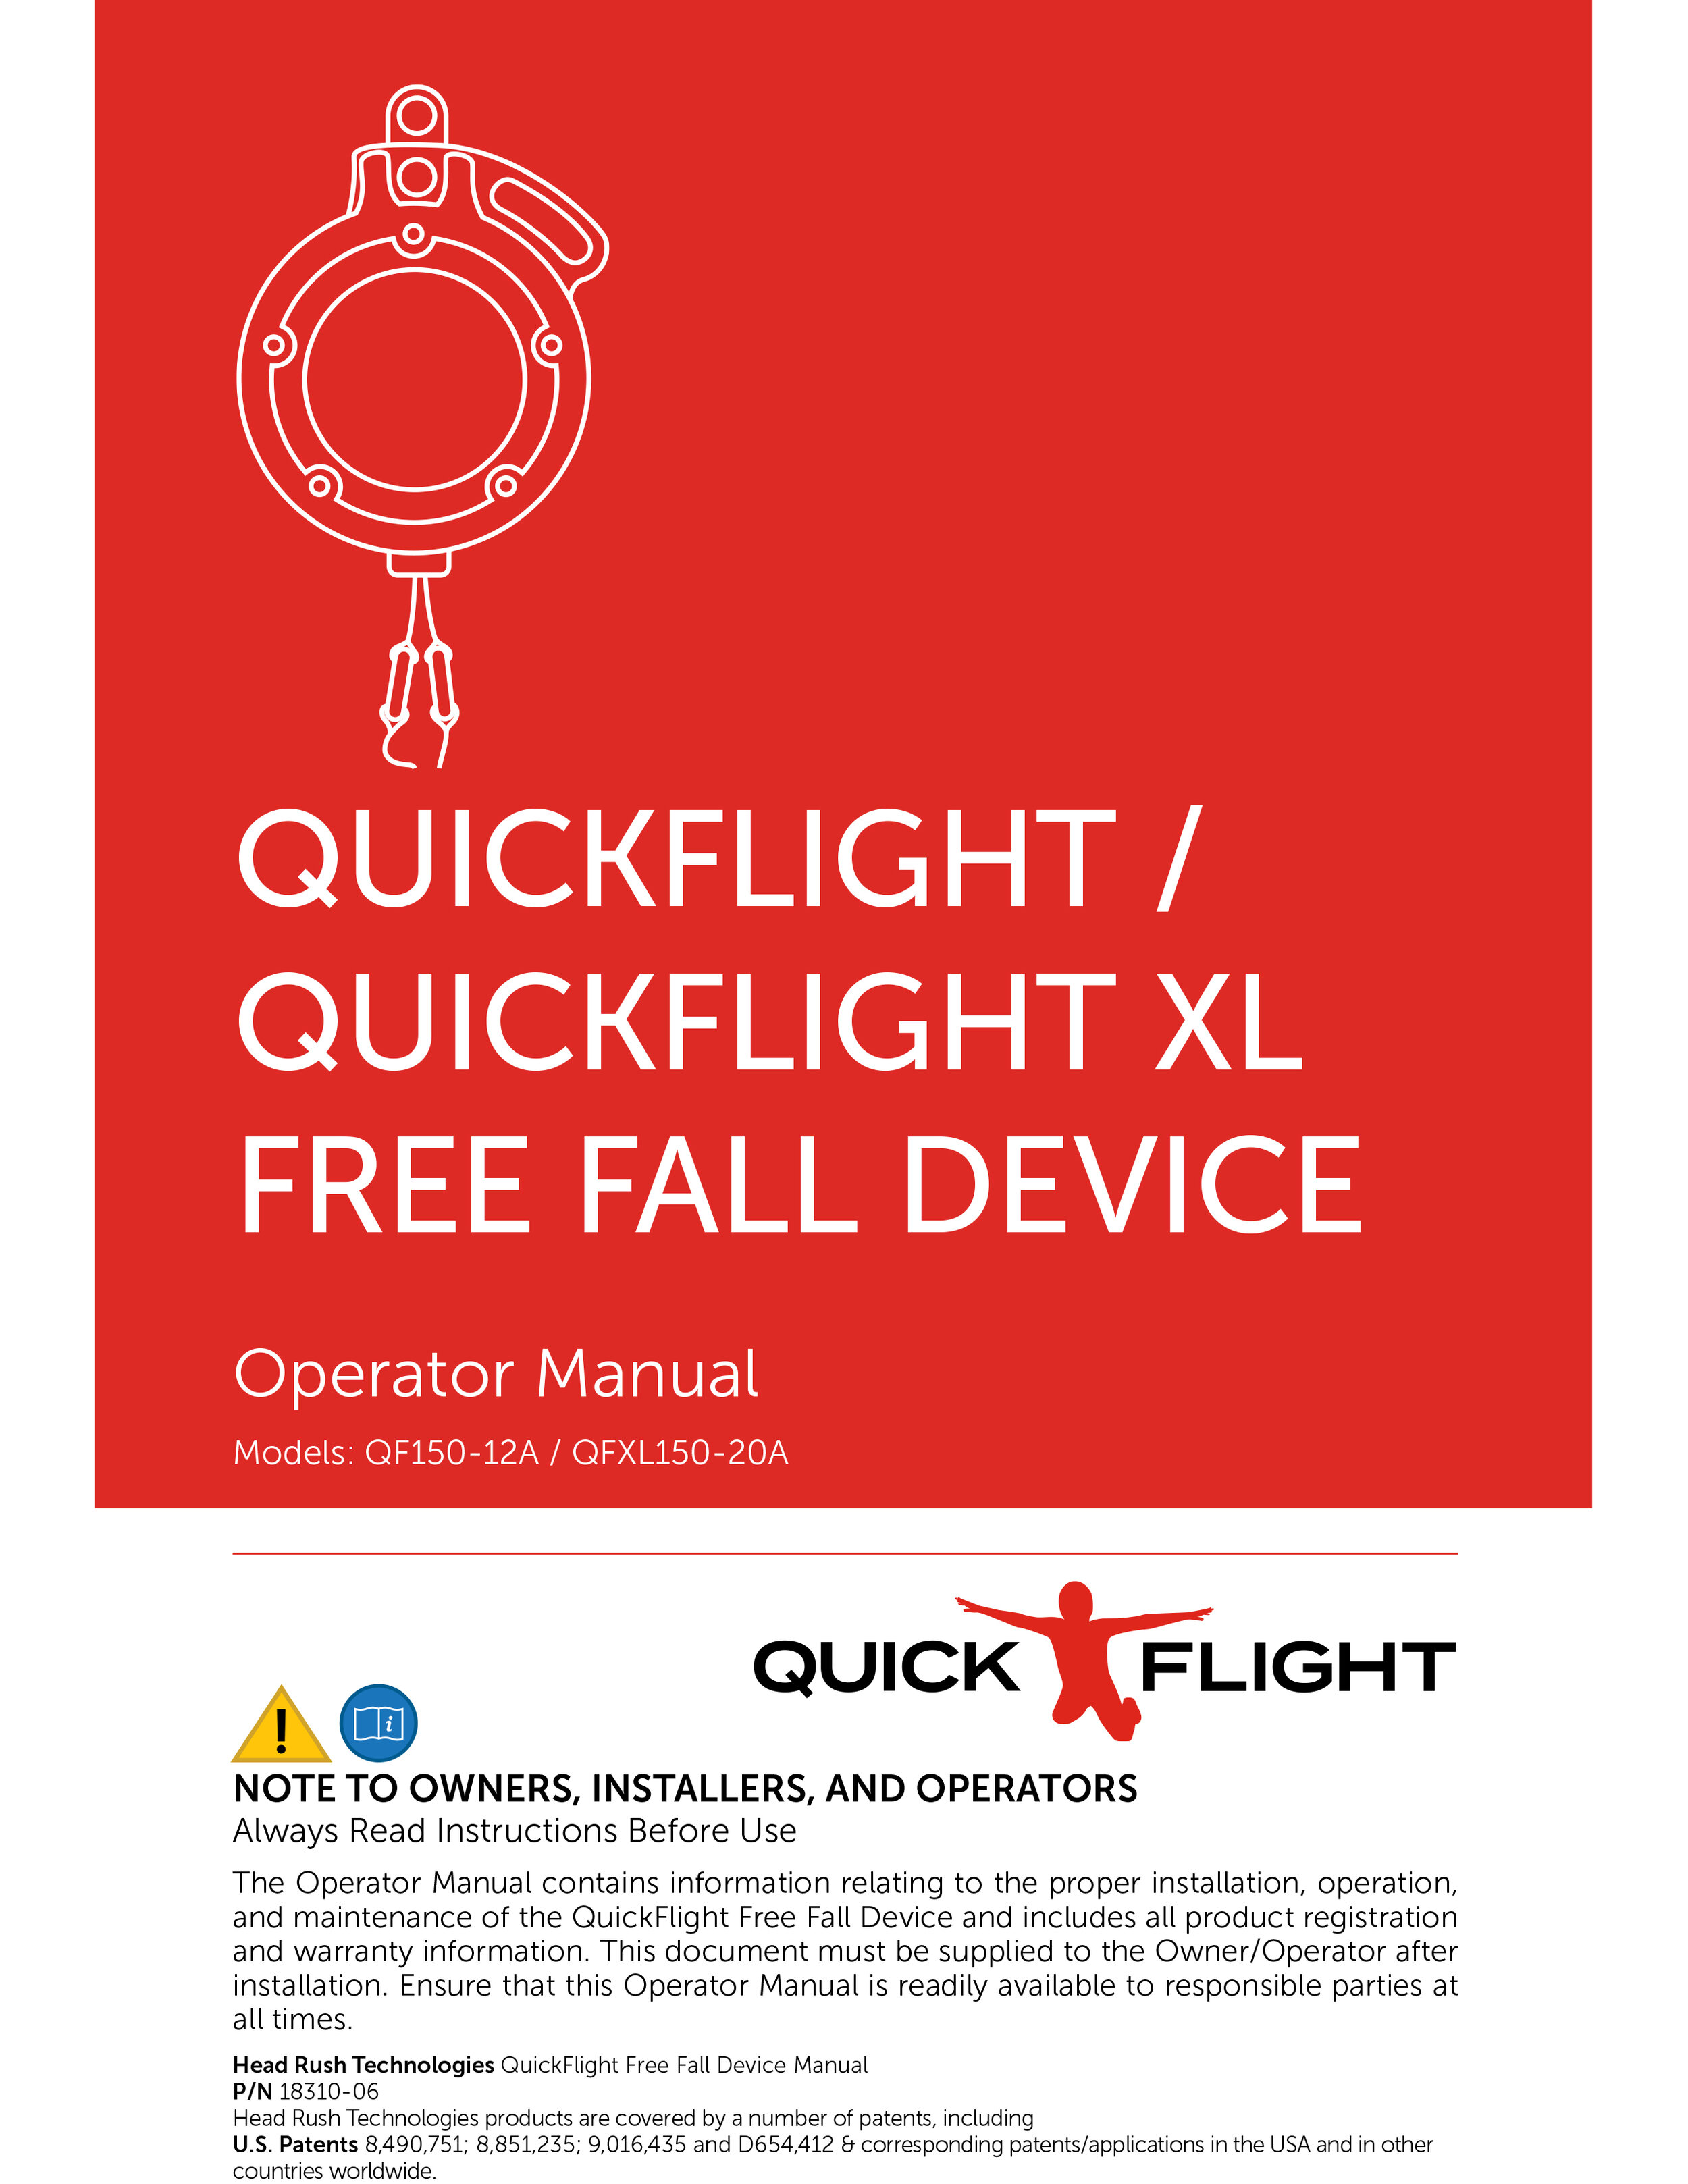 QuickFlight Operator Manual